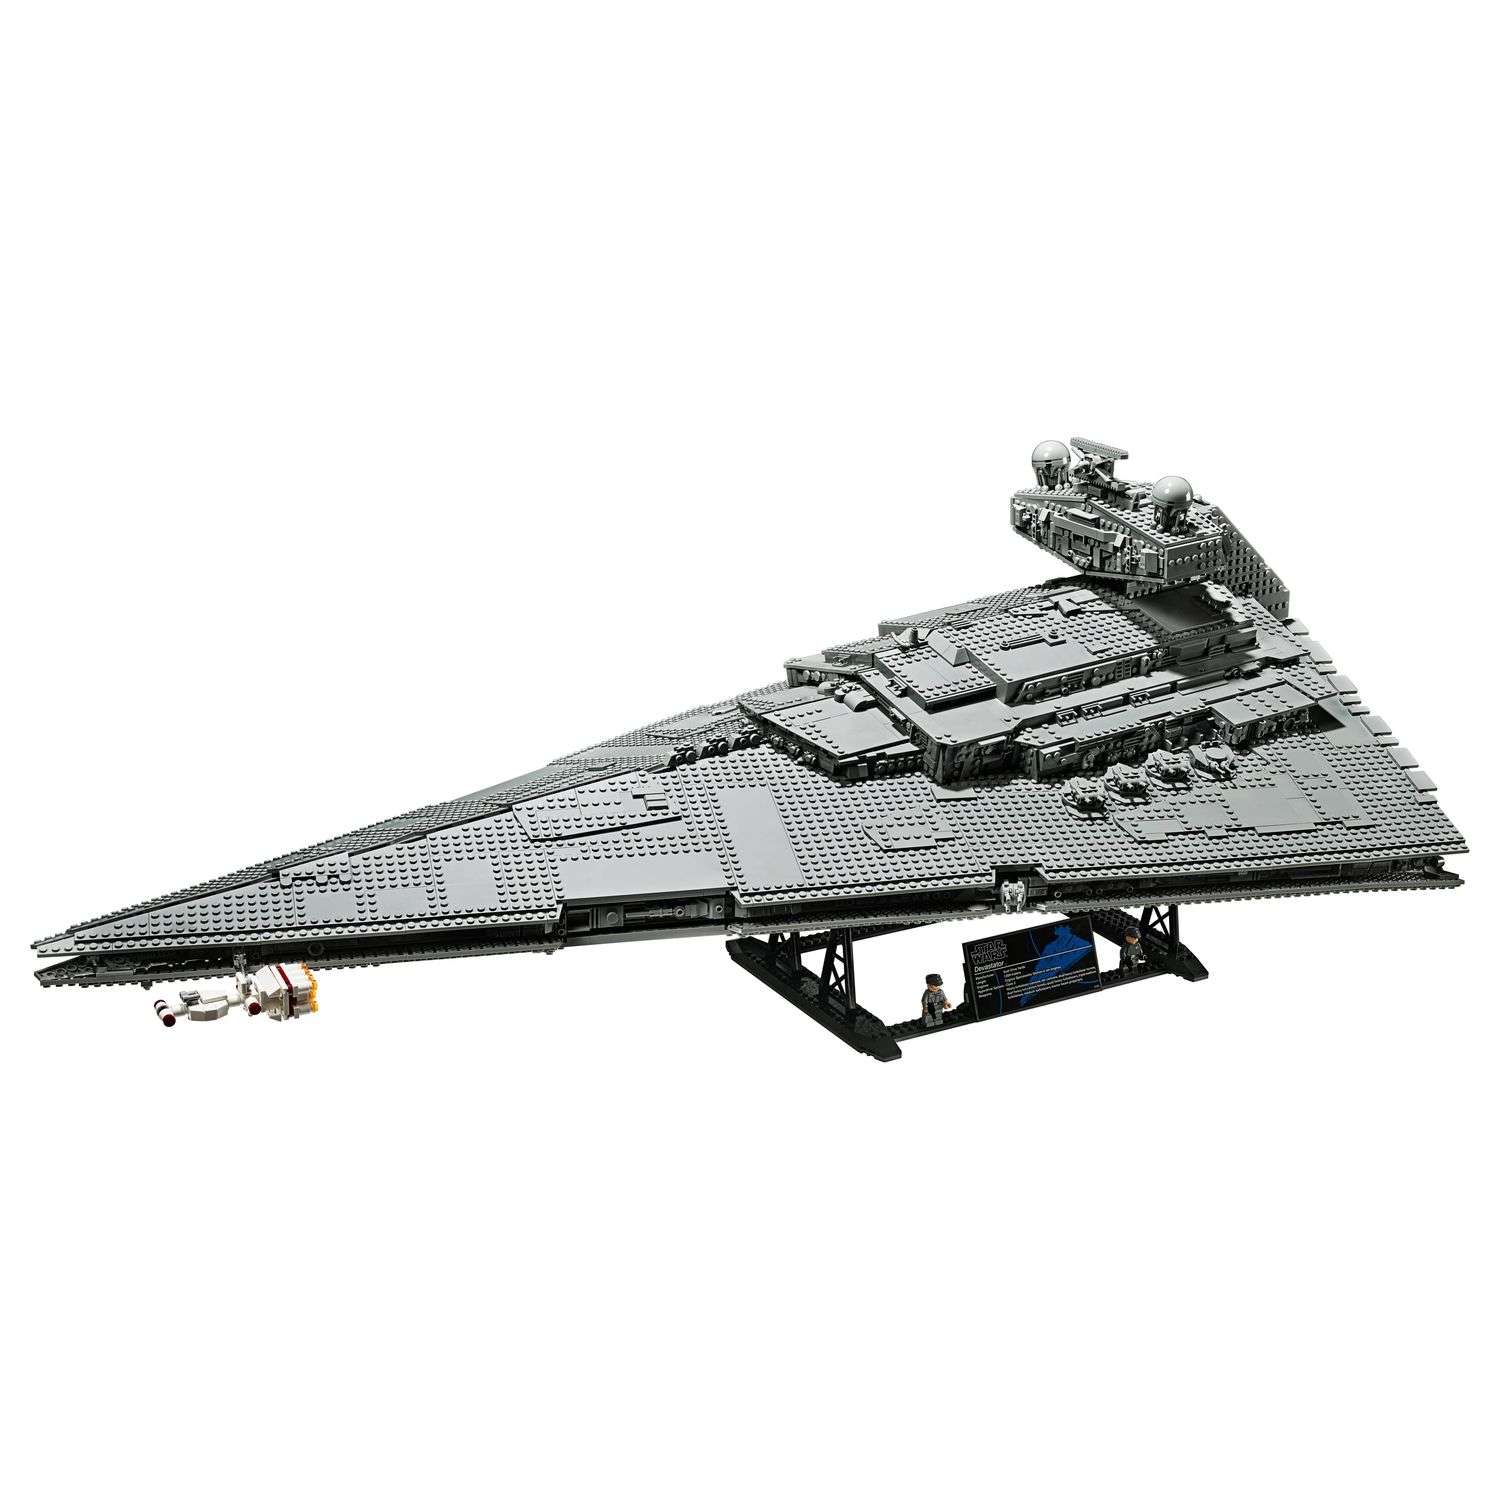 Конструктор LEGO Star Wars Имперский звездный разрушитель 75252 - фото 2